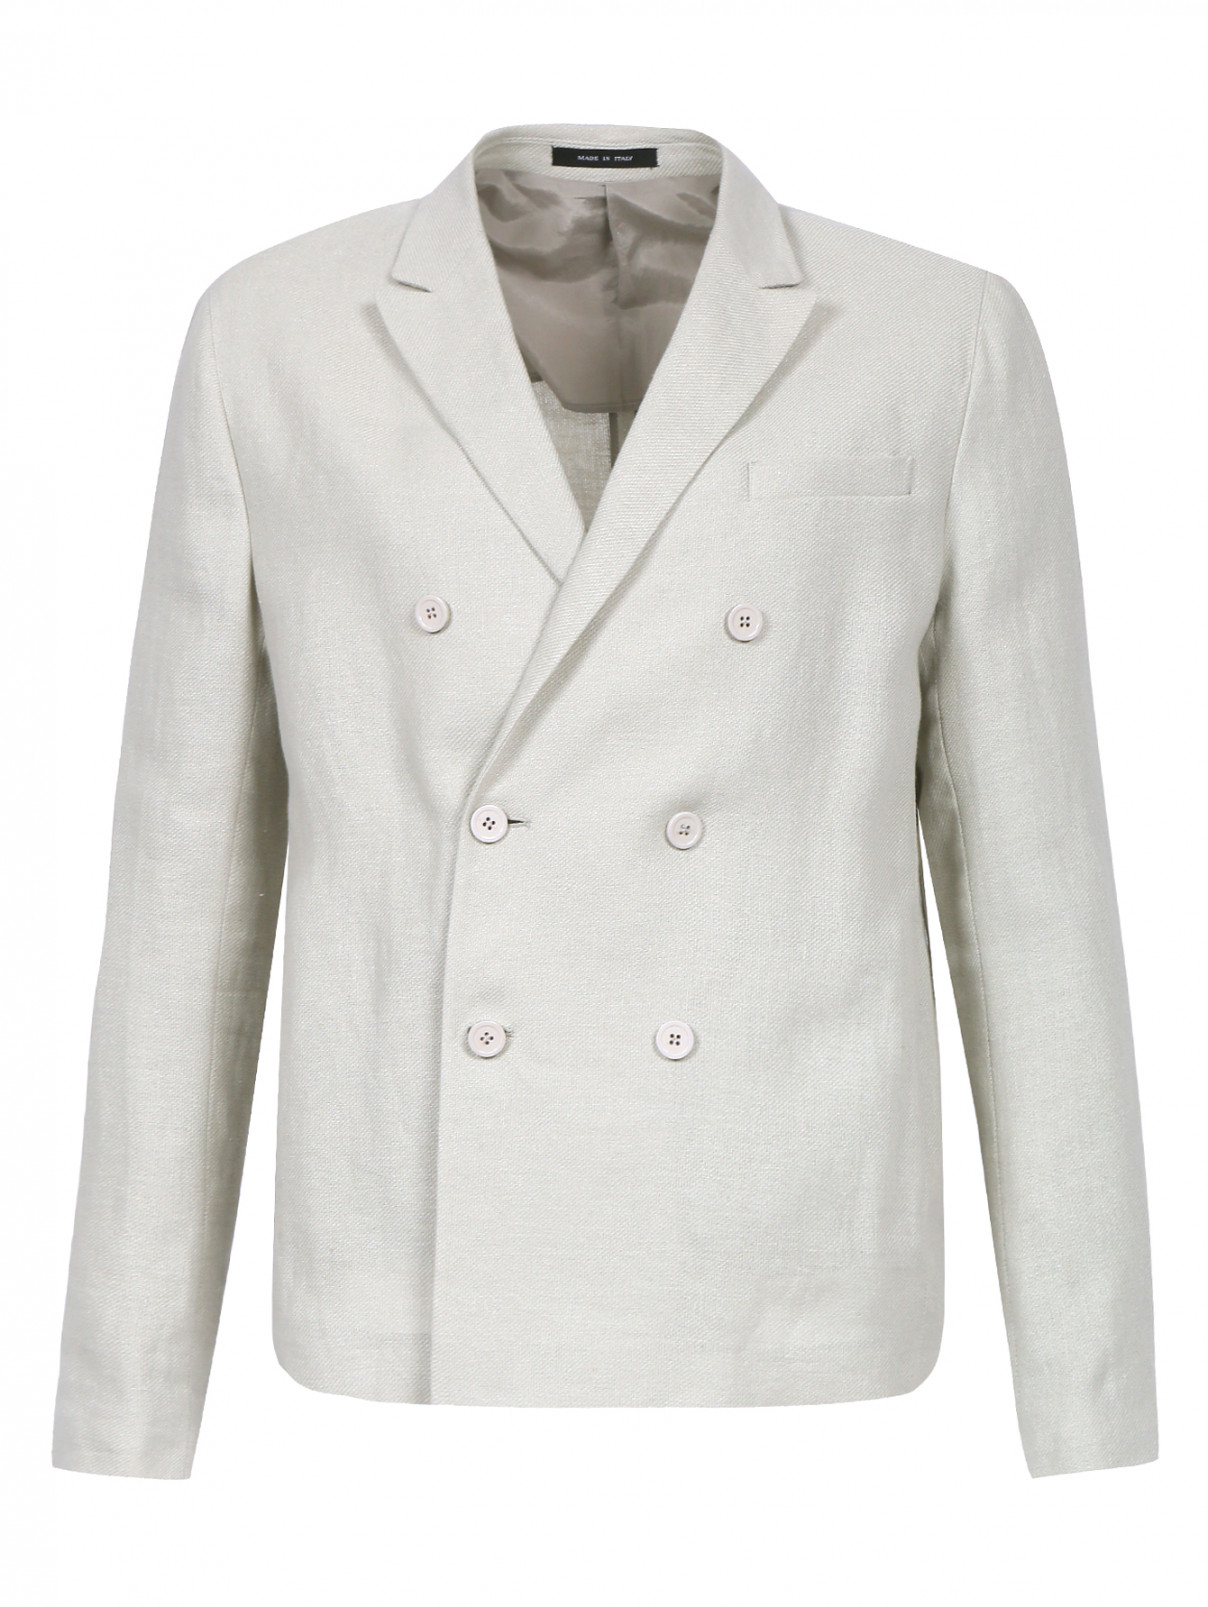 Двубортный пиджак из льна Emporio Armani  –  Общий вид  – Цвет:  Бежевый